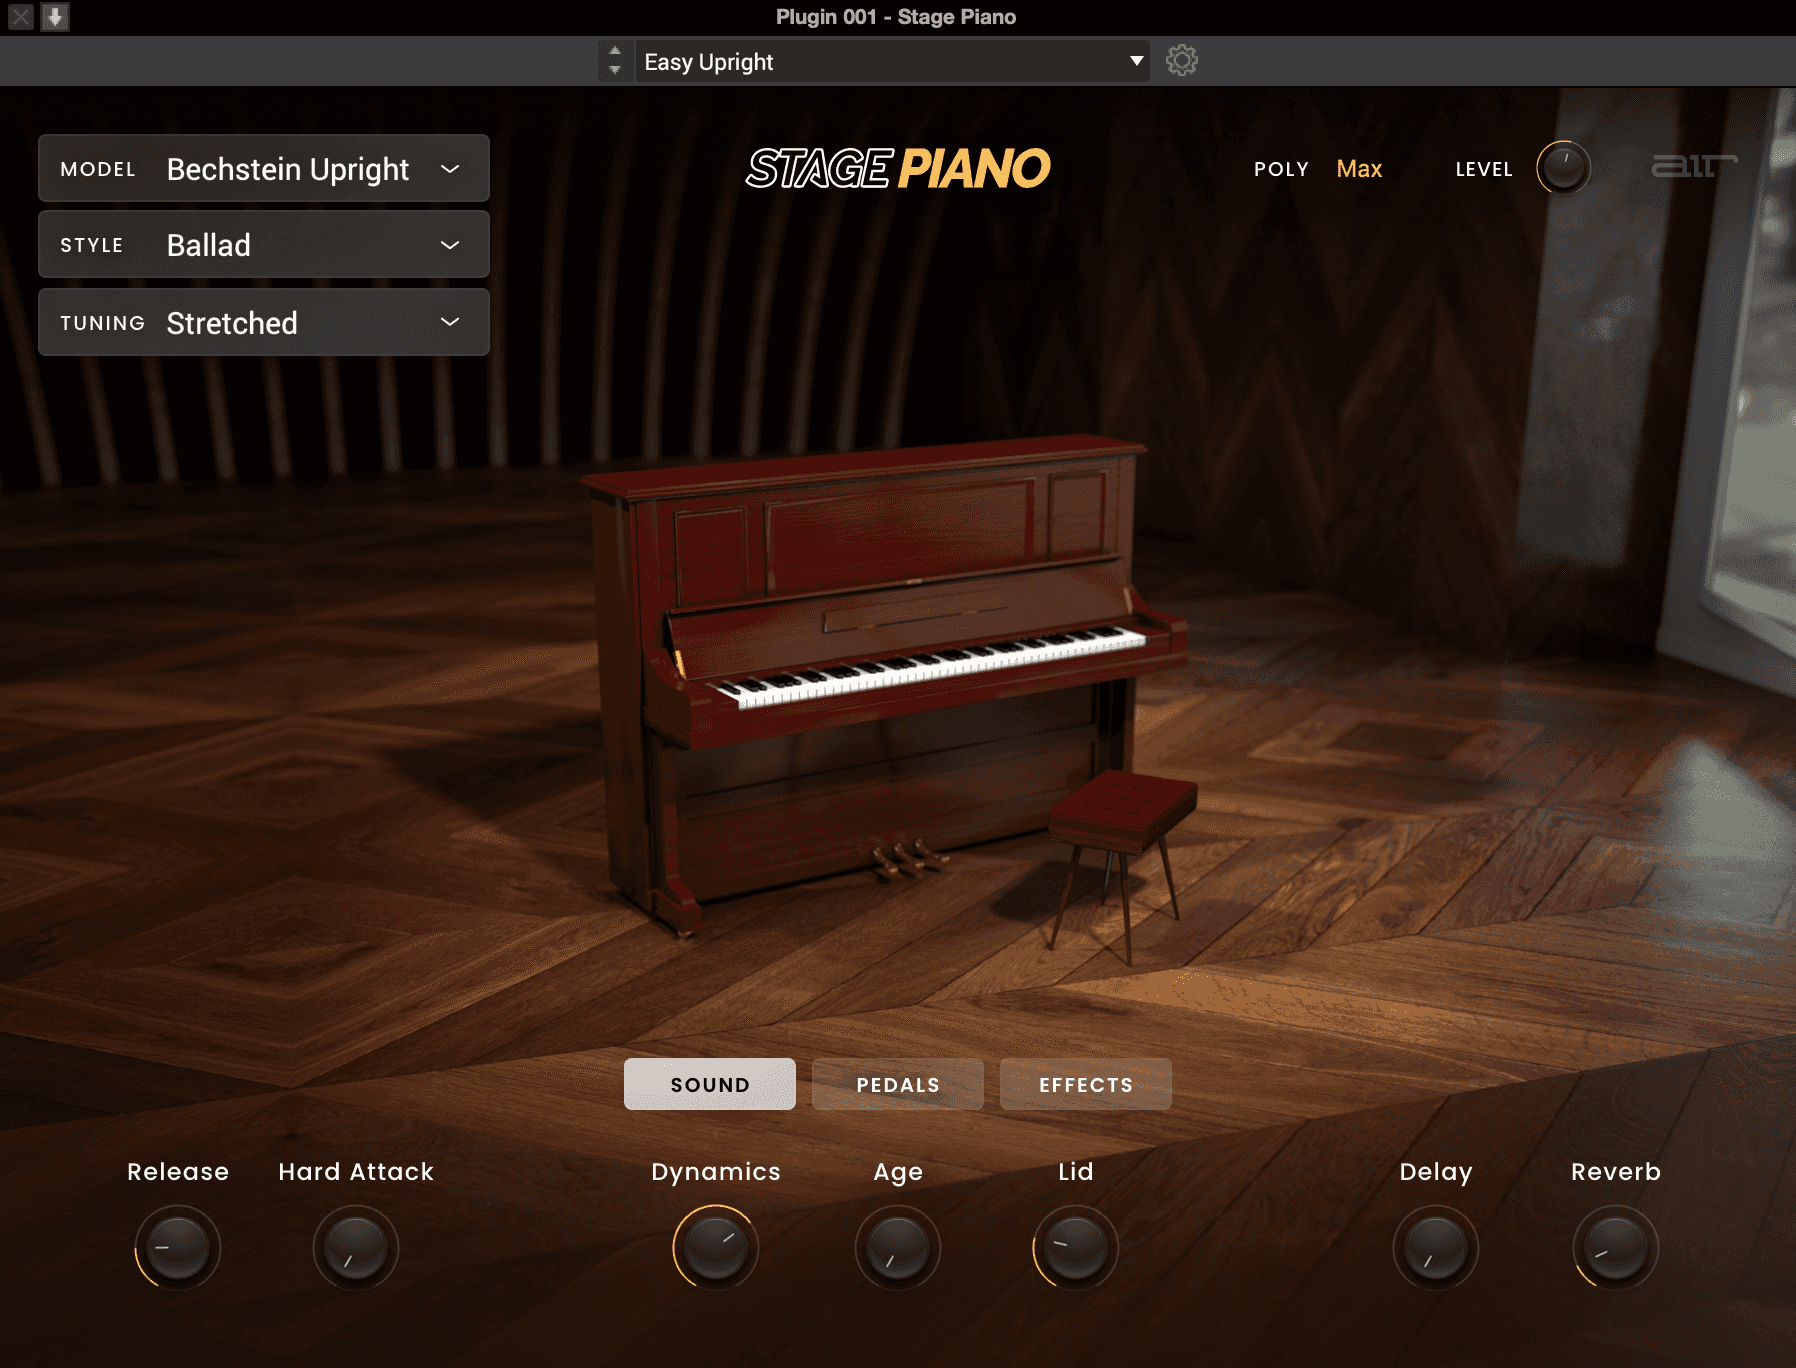 Stage Piano Bechstein